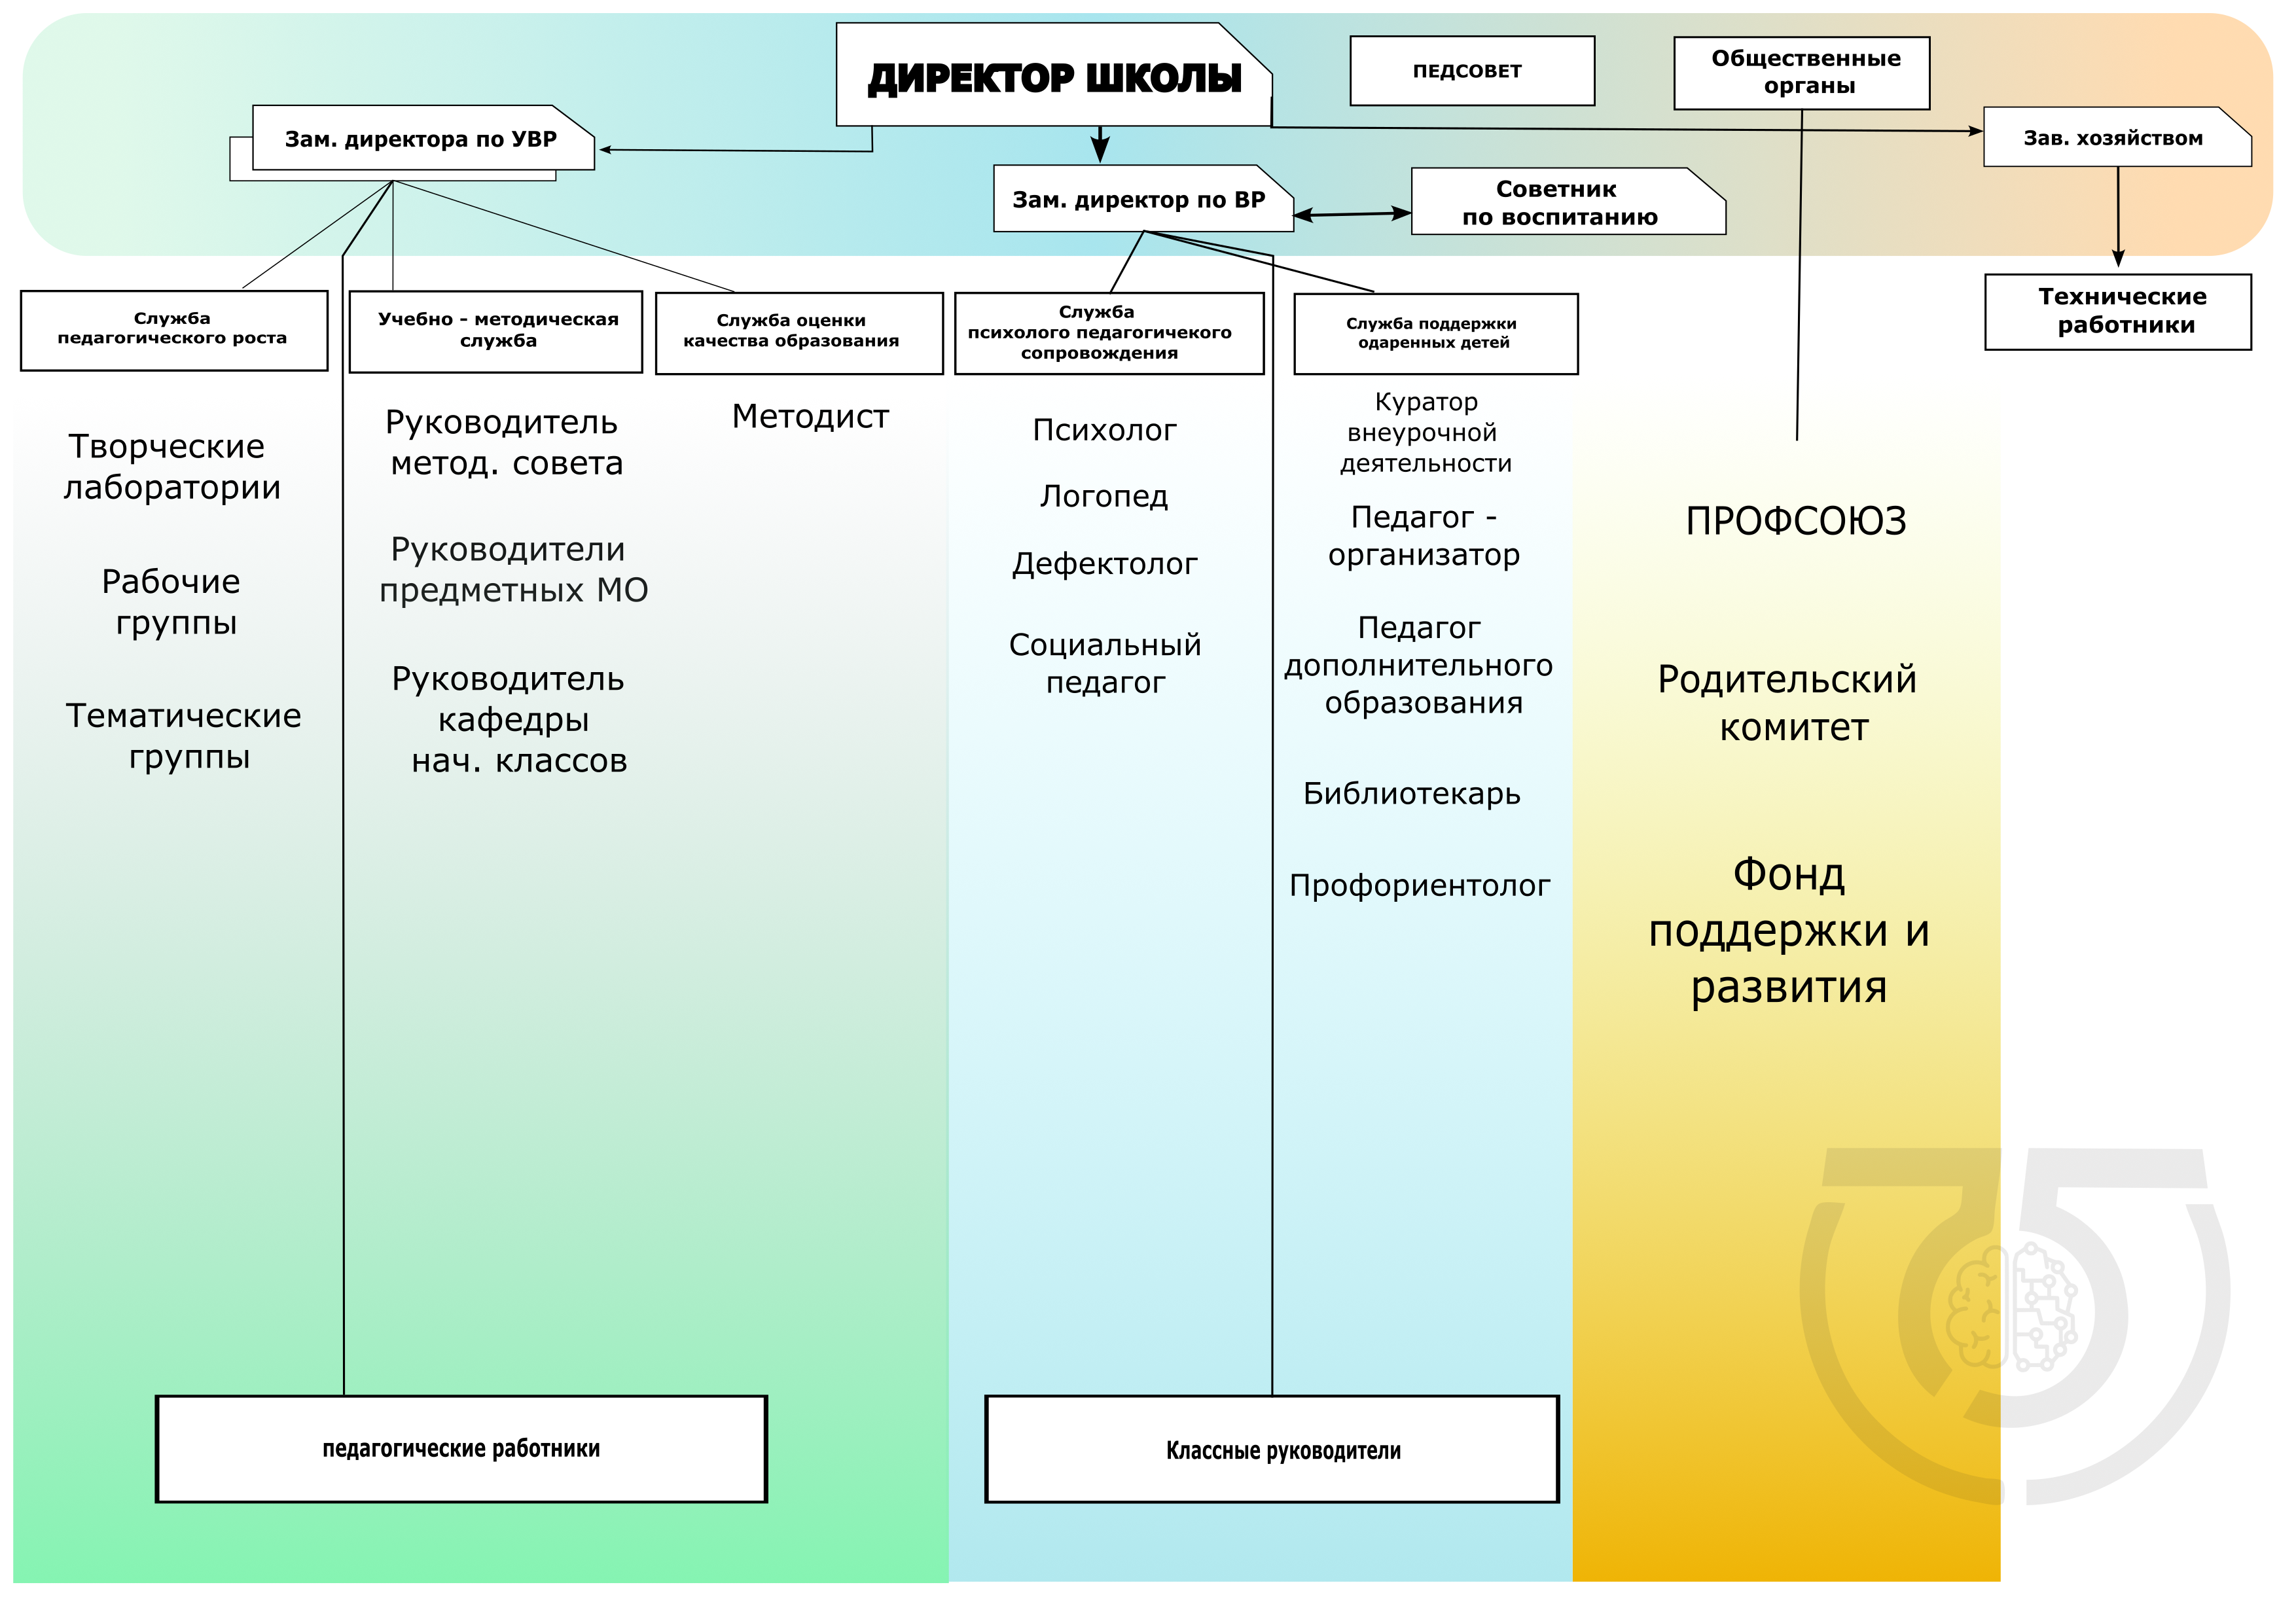 Структура управления МБОУ СОШ №75